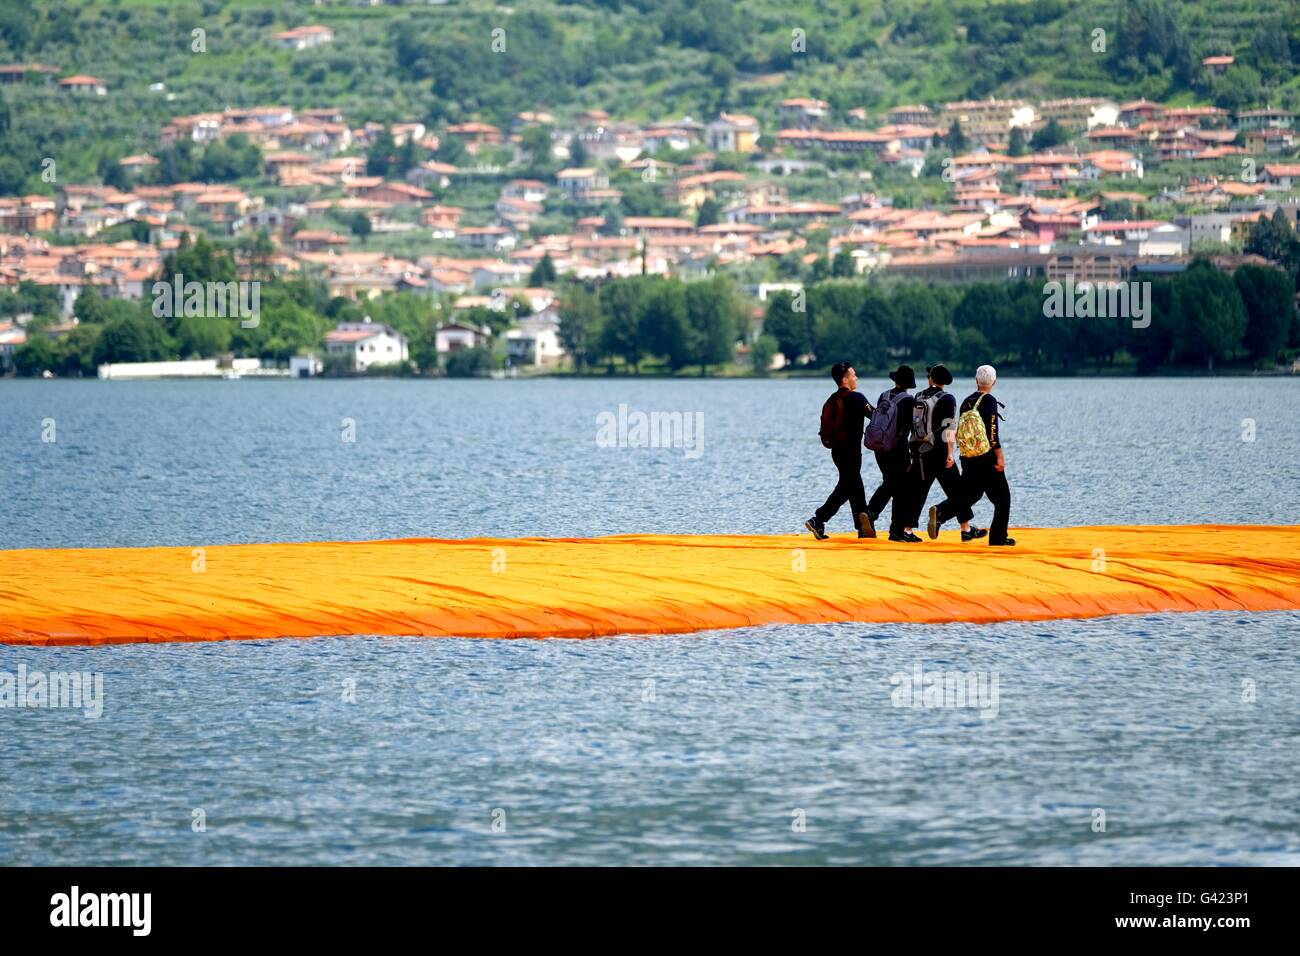 Sulzano, Italien. 17. Juni 2016. Menschen zu Fuß entlang der Orange  schwimmen Pfeiler des Projekts "The Floating Piers" von Christo am Iseosee  Lago in Sulzano, Italien, 17. Juni 2016. Das Kunstprojekt von